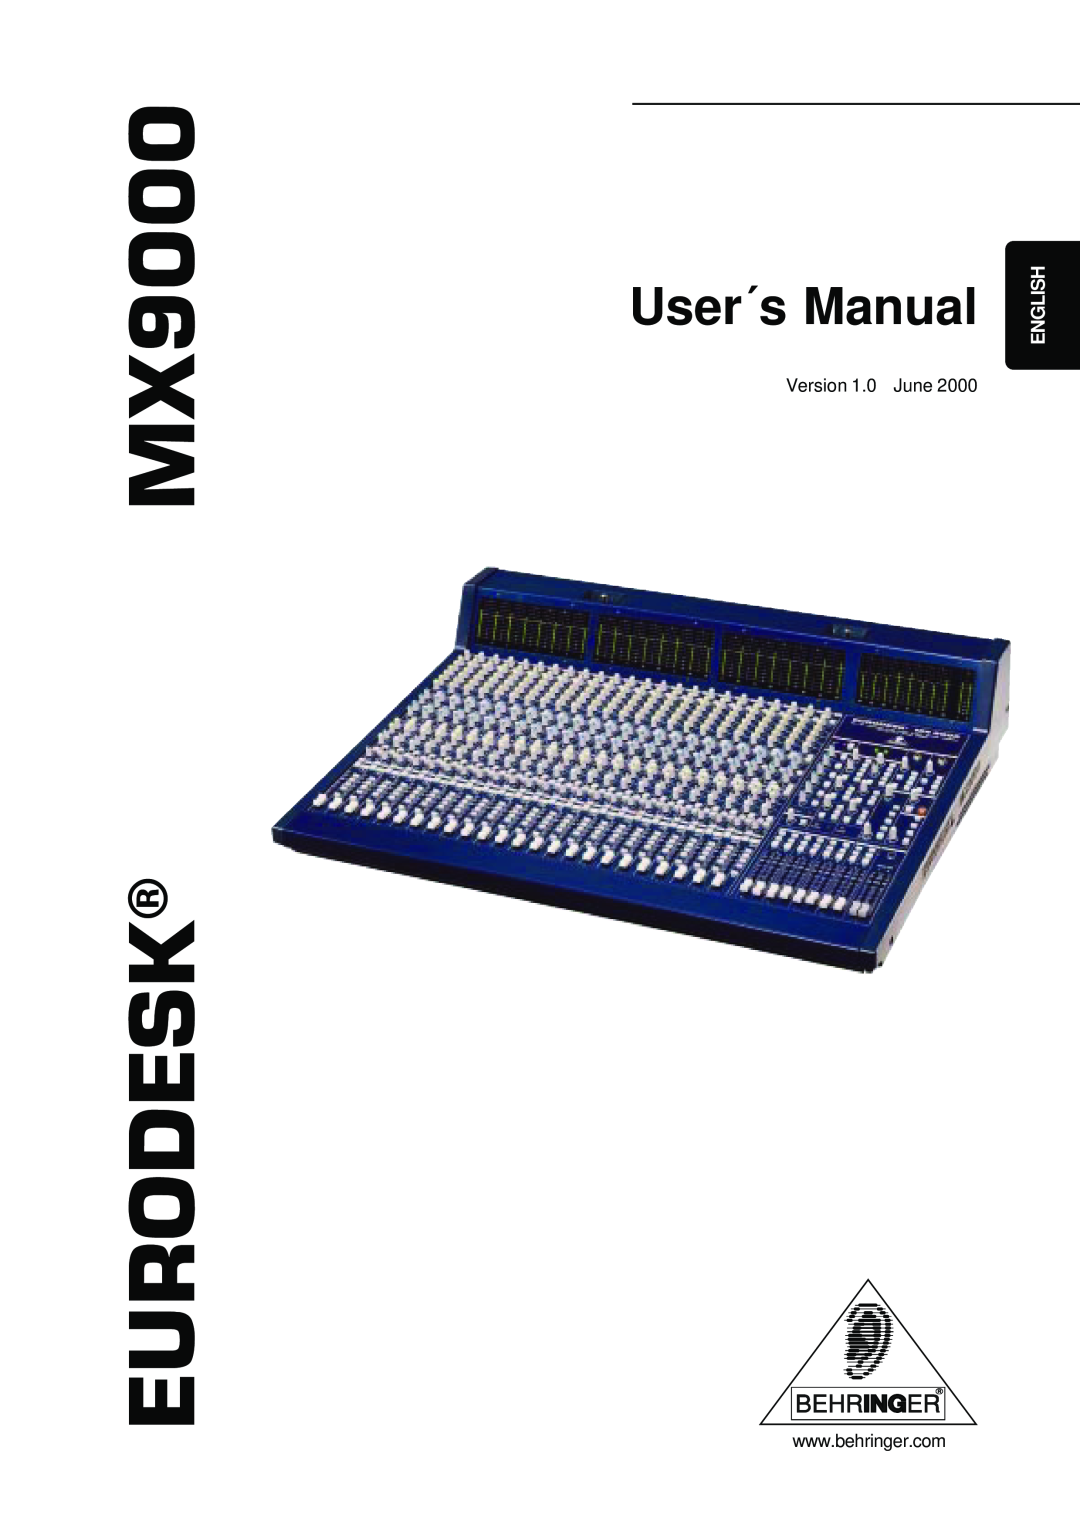 Behringer user manual EURODESKMX9000, User´s Manual, English 